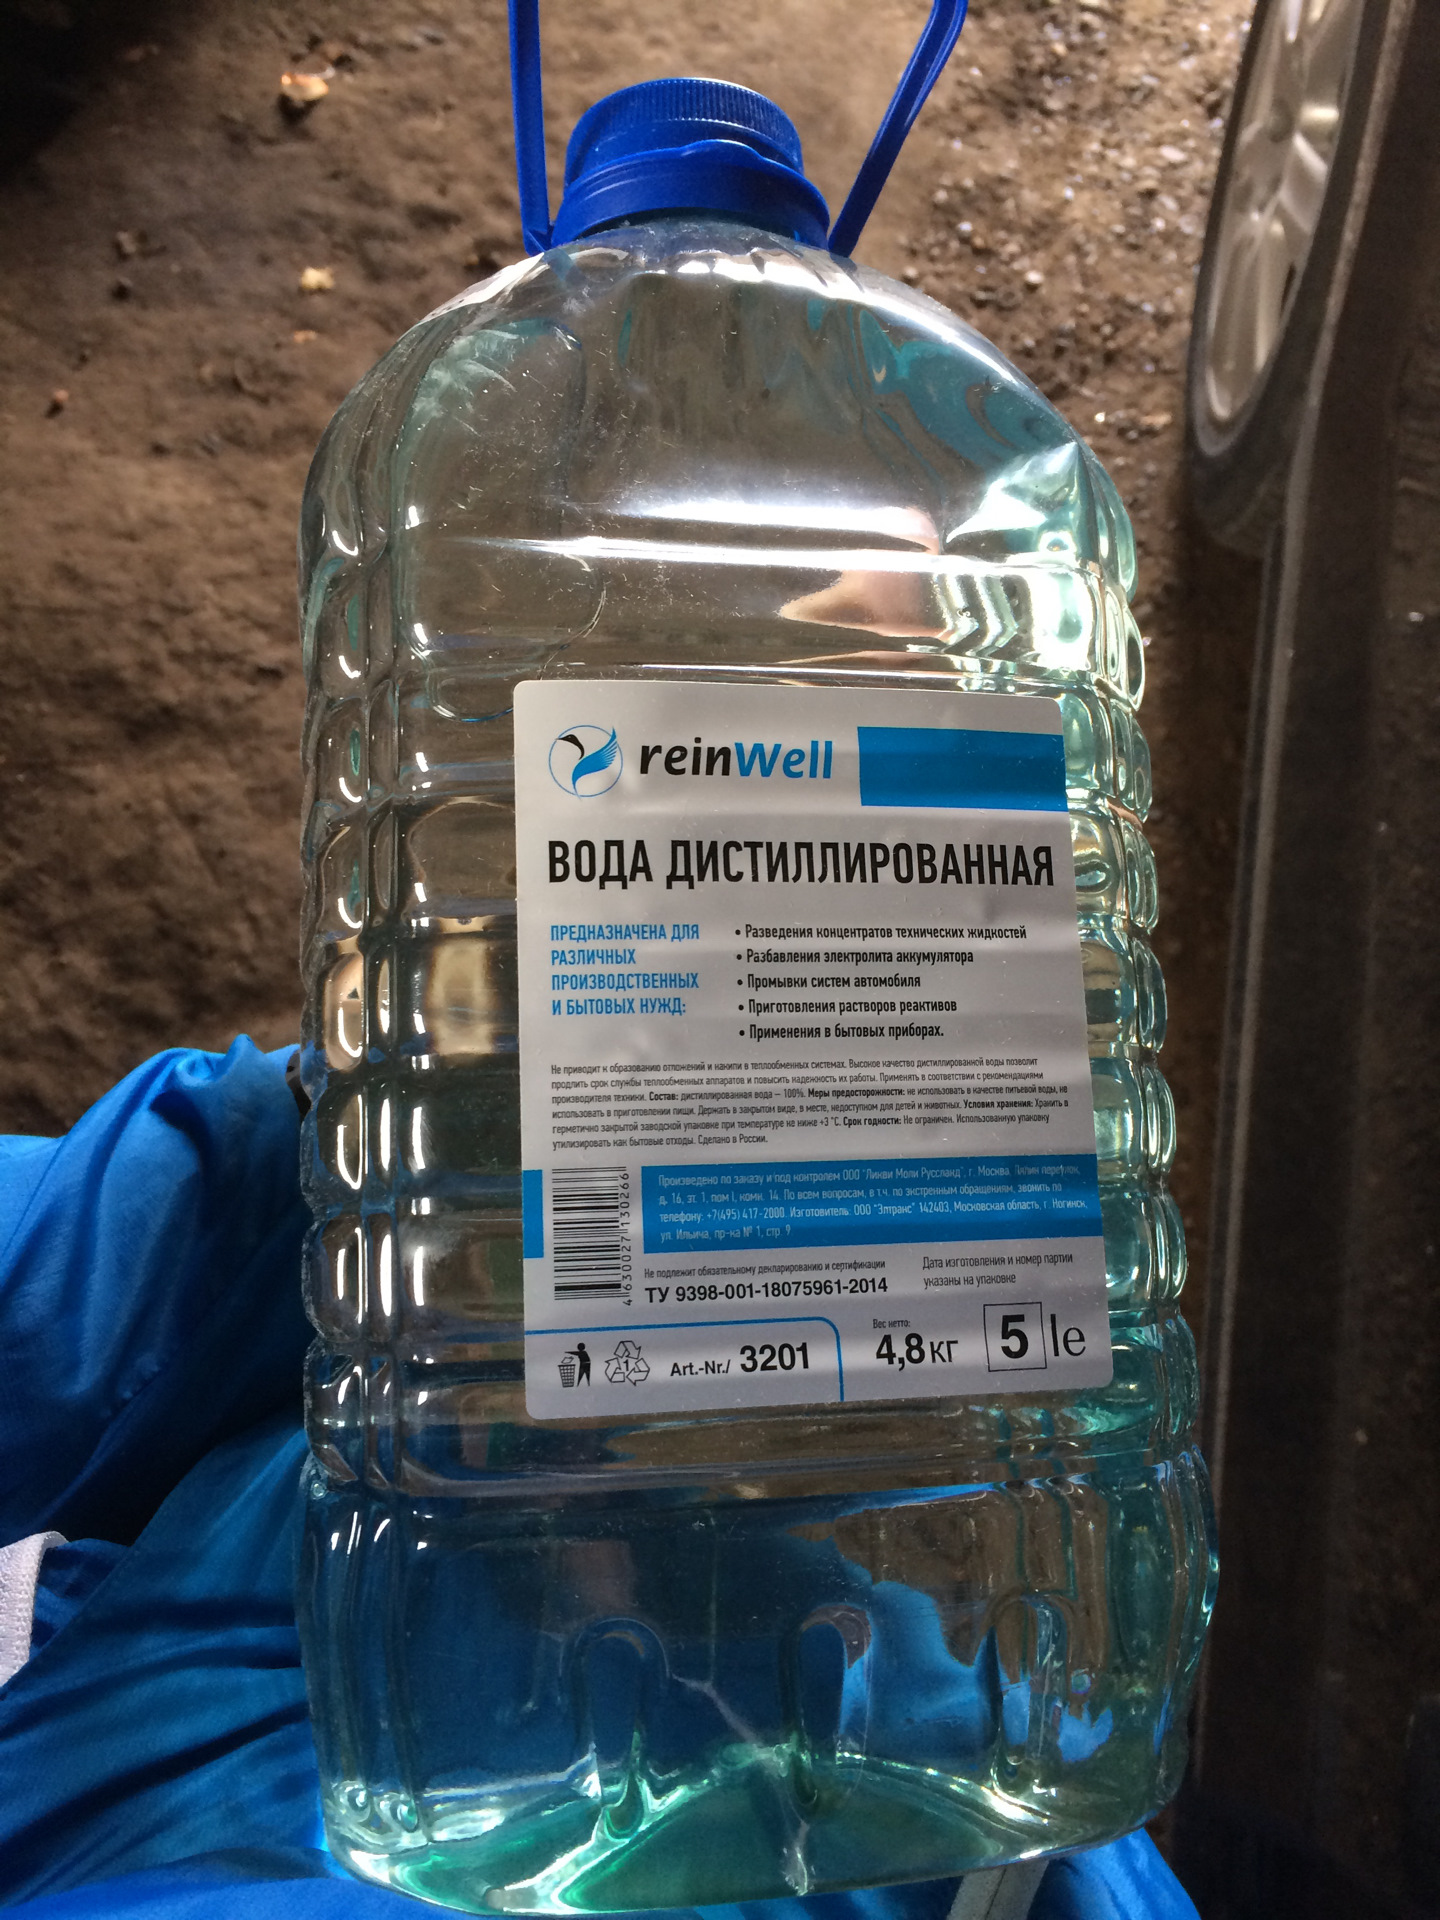 Ионы в дистиллированной воде. 3201 REINWELL вода дистиллированная RW-02 (4,8 кг). REINWELL дистилированаяв Ода. Вода дистиллированная VAG. Дистиллированная вода REINWELL RW-02.